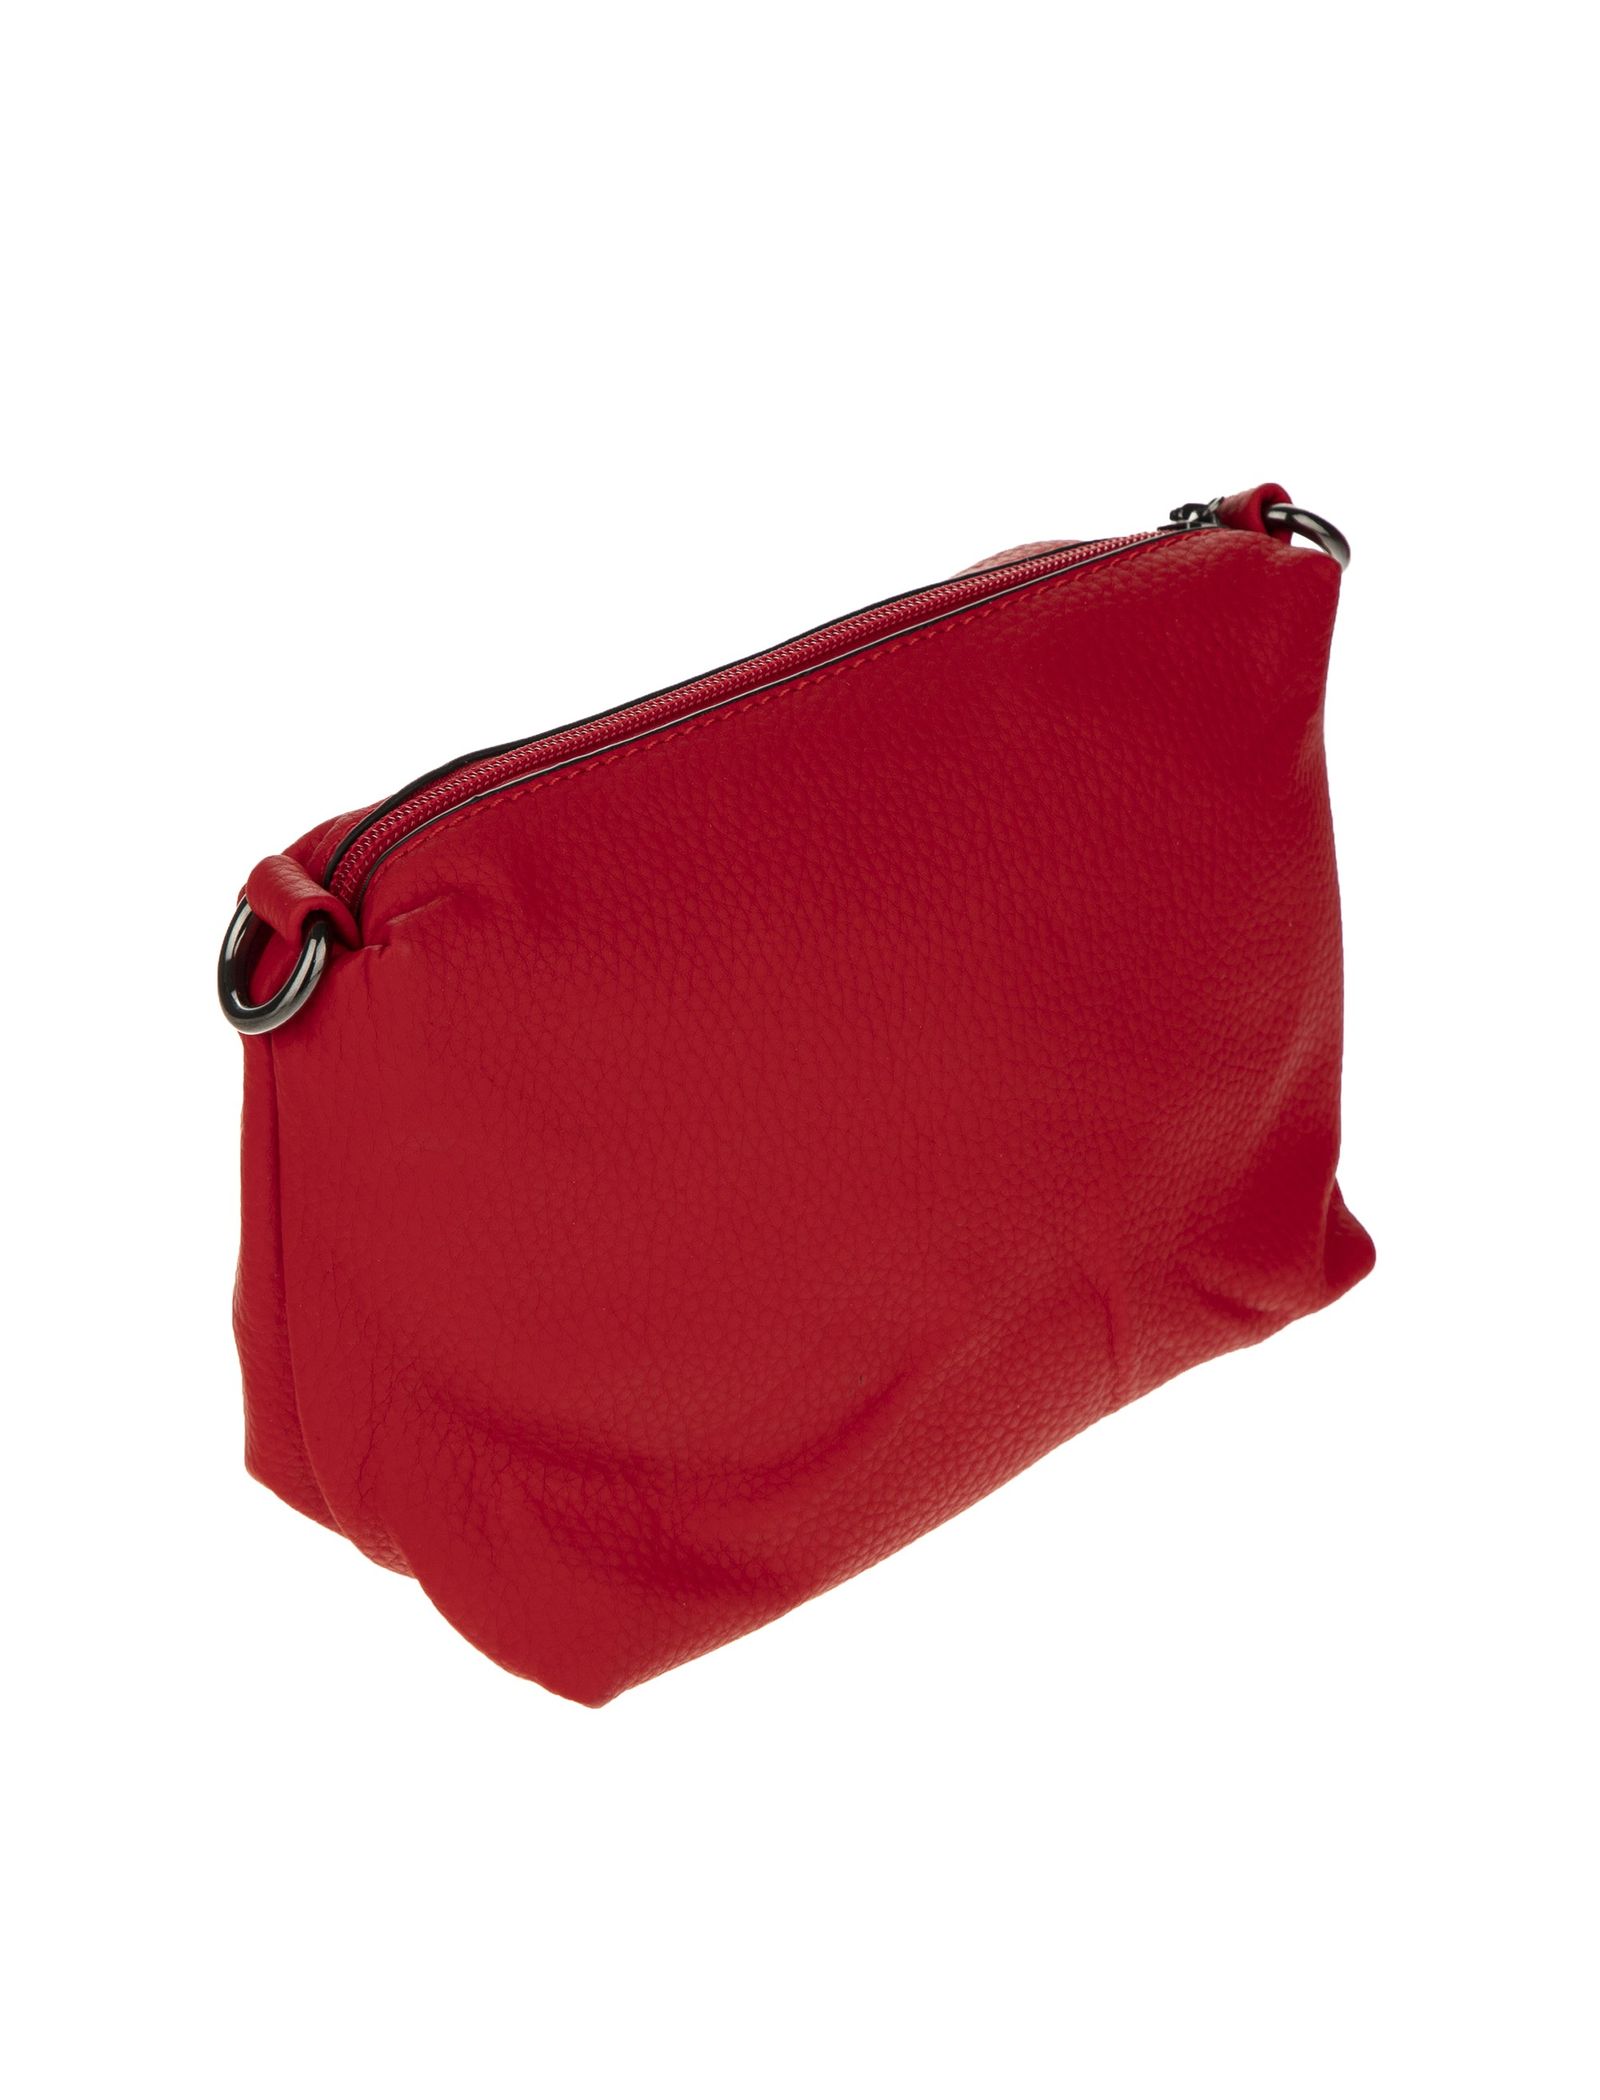 کیف دوشی روزمره زنانه - جانی اند جانی تک سایز - قرمز - 8